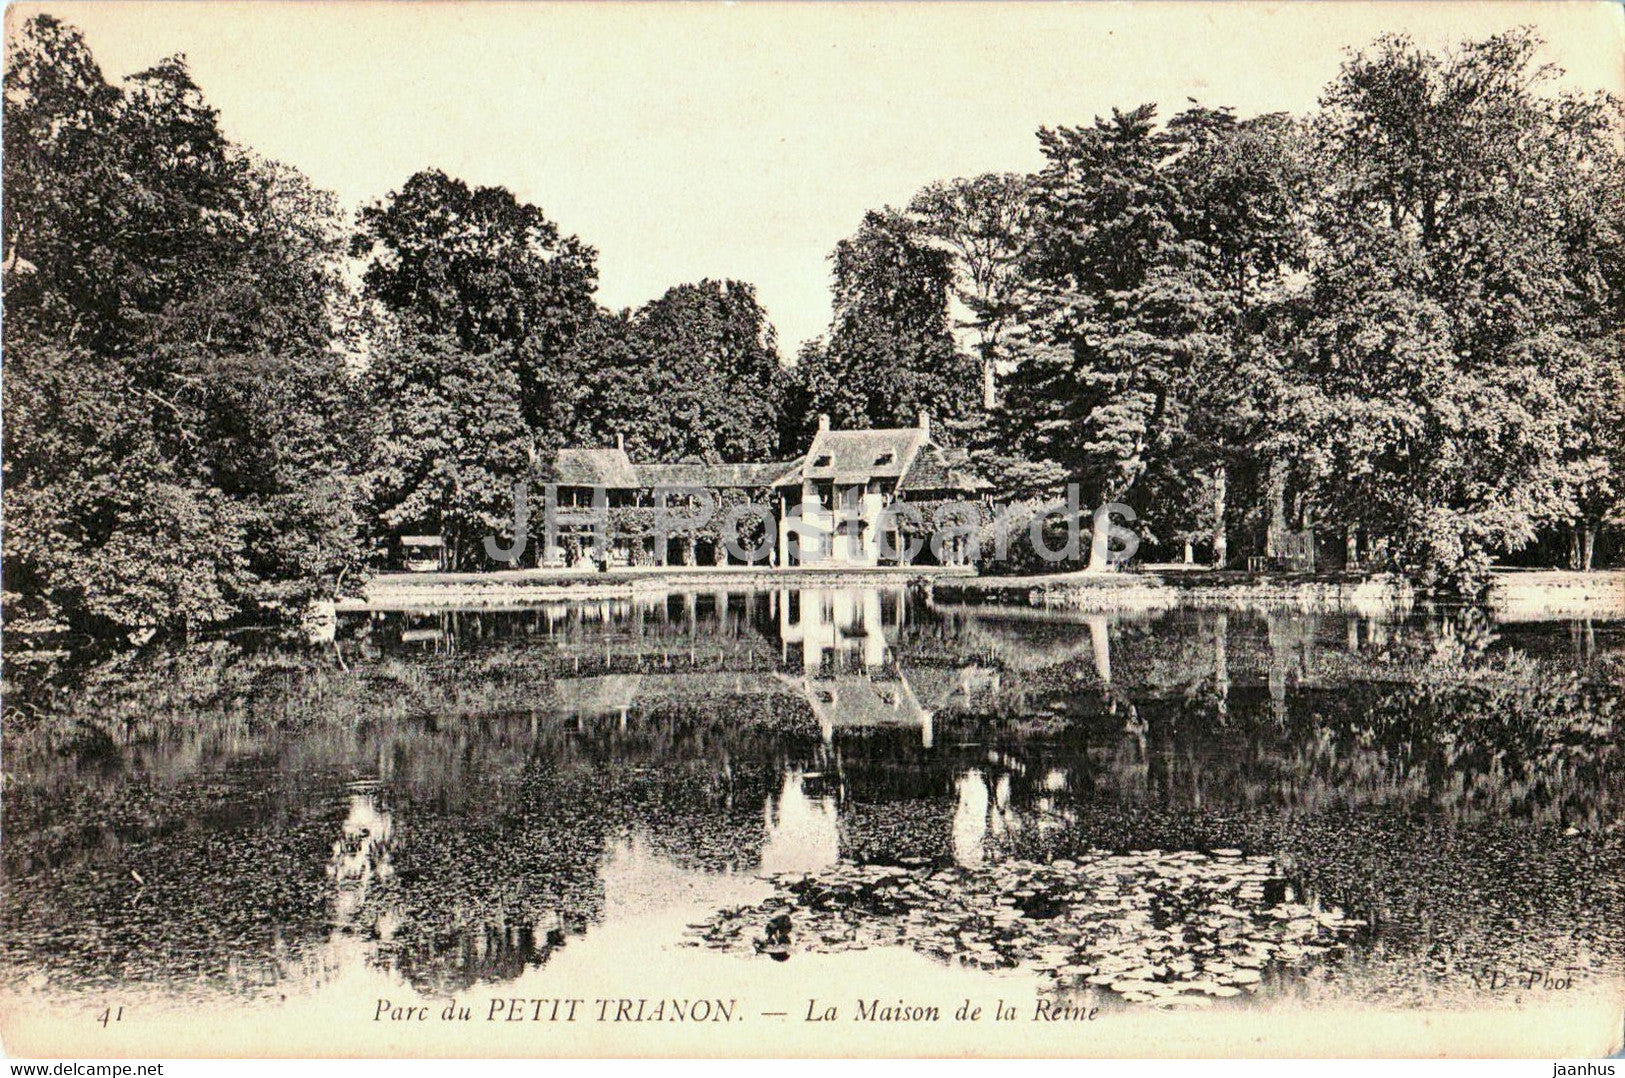 Parc du Petit Trianon - La Maison de la Reine - 41 - old postcard - France - unused - JH Postcards